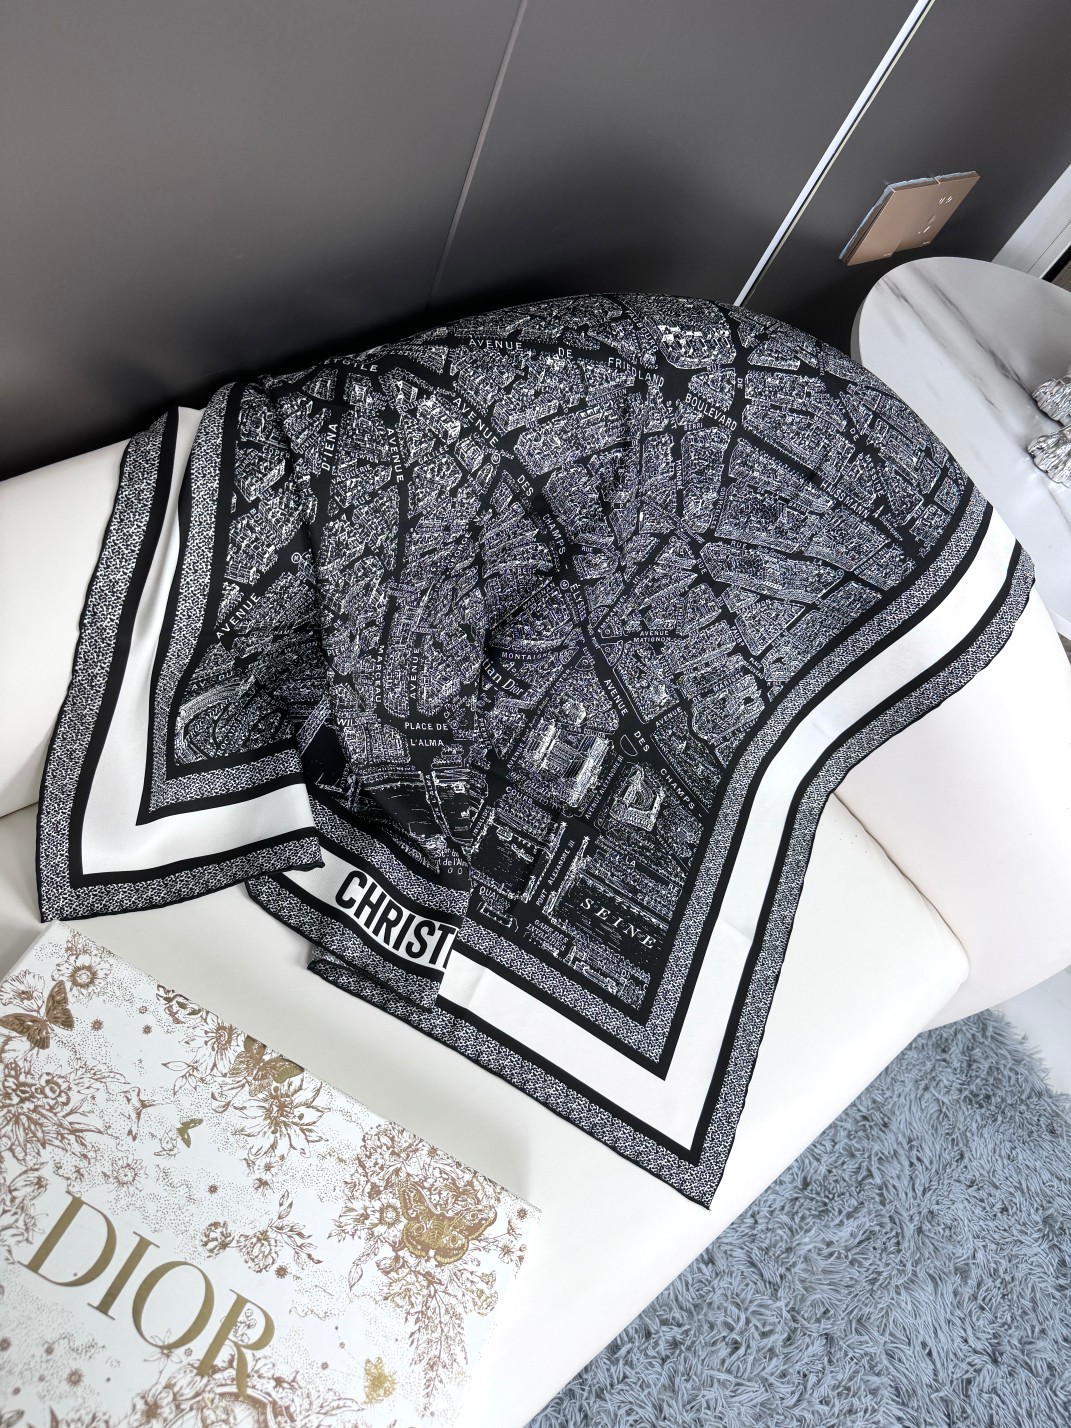 品名:巴黎地图面料真丝尺寸90*90颜色黑色白色这款方巾饰以本季经典的PlandeParis印花该图案从